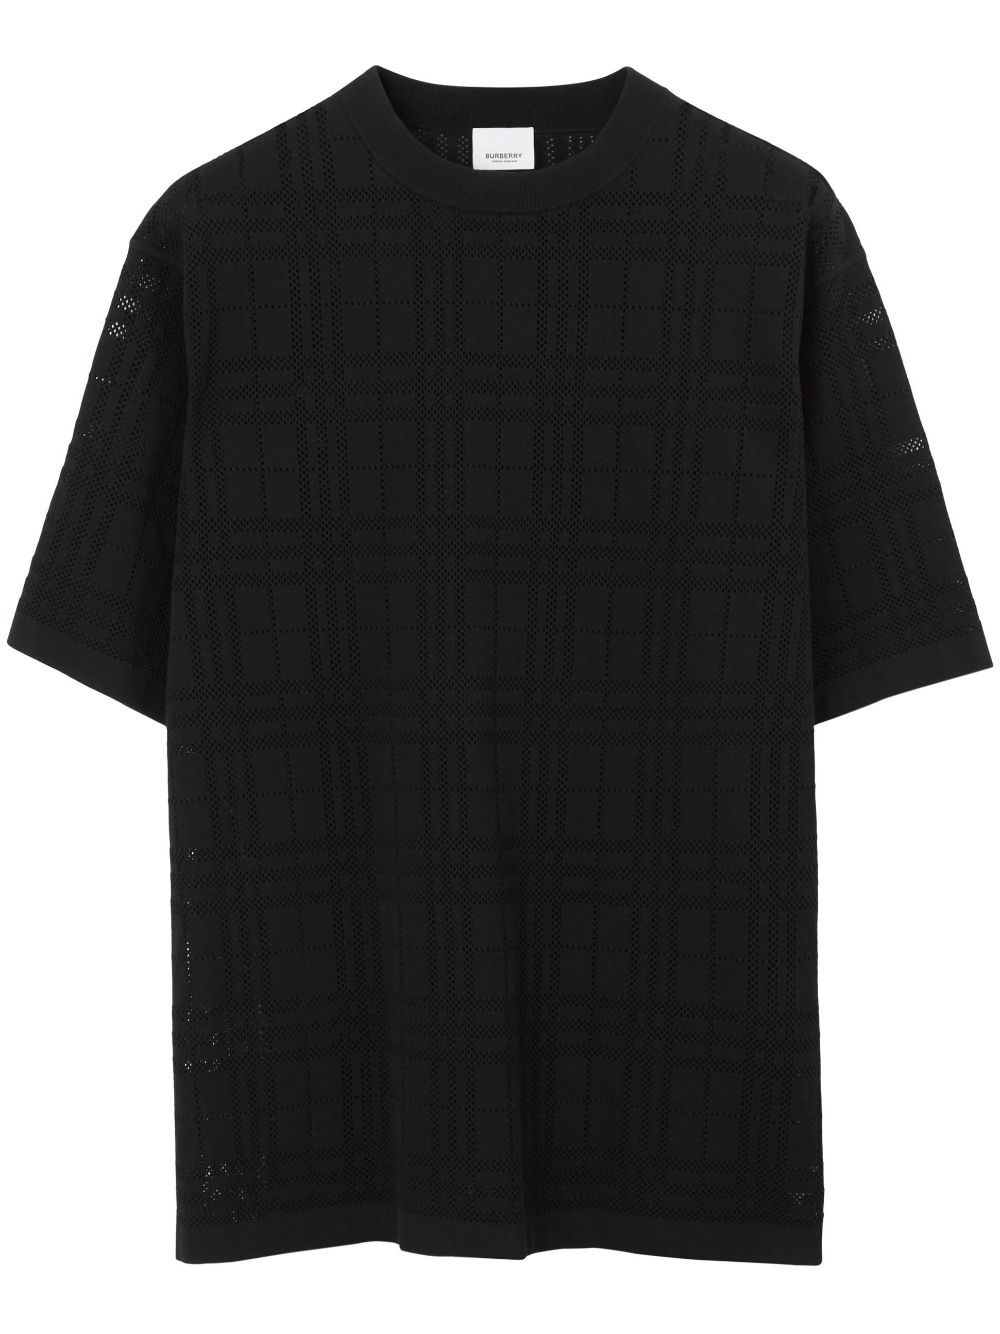 Burberry check-print cotton T-shirt - Black